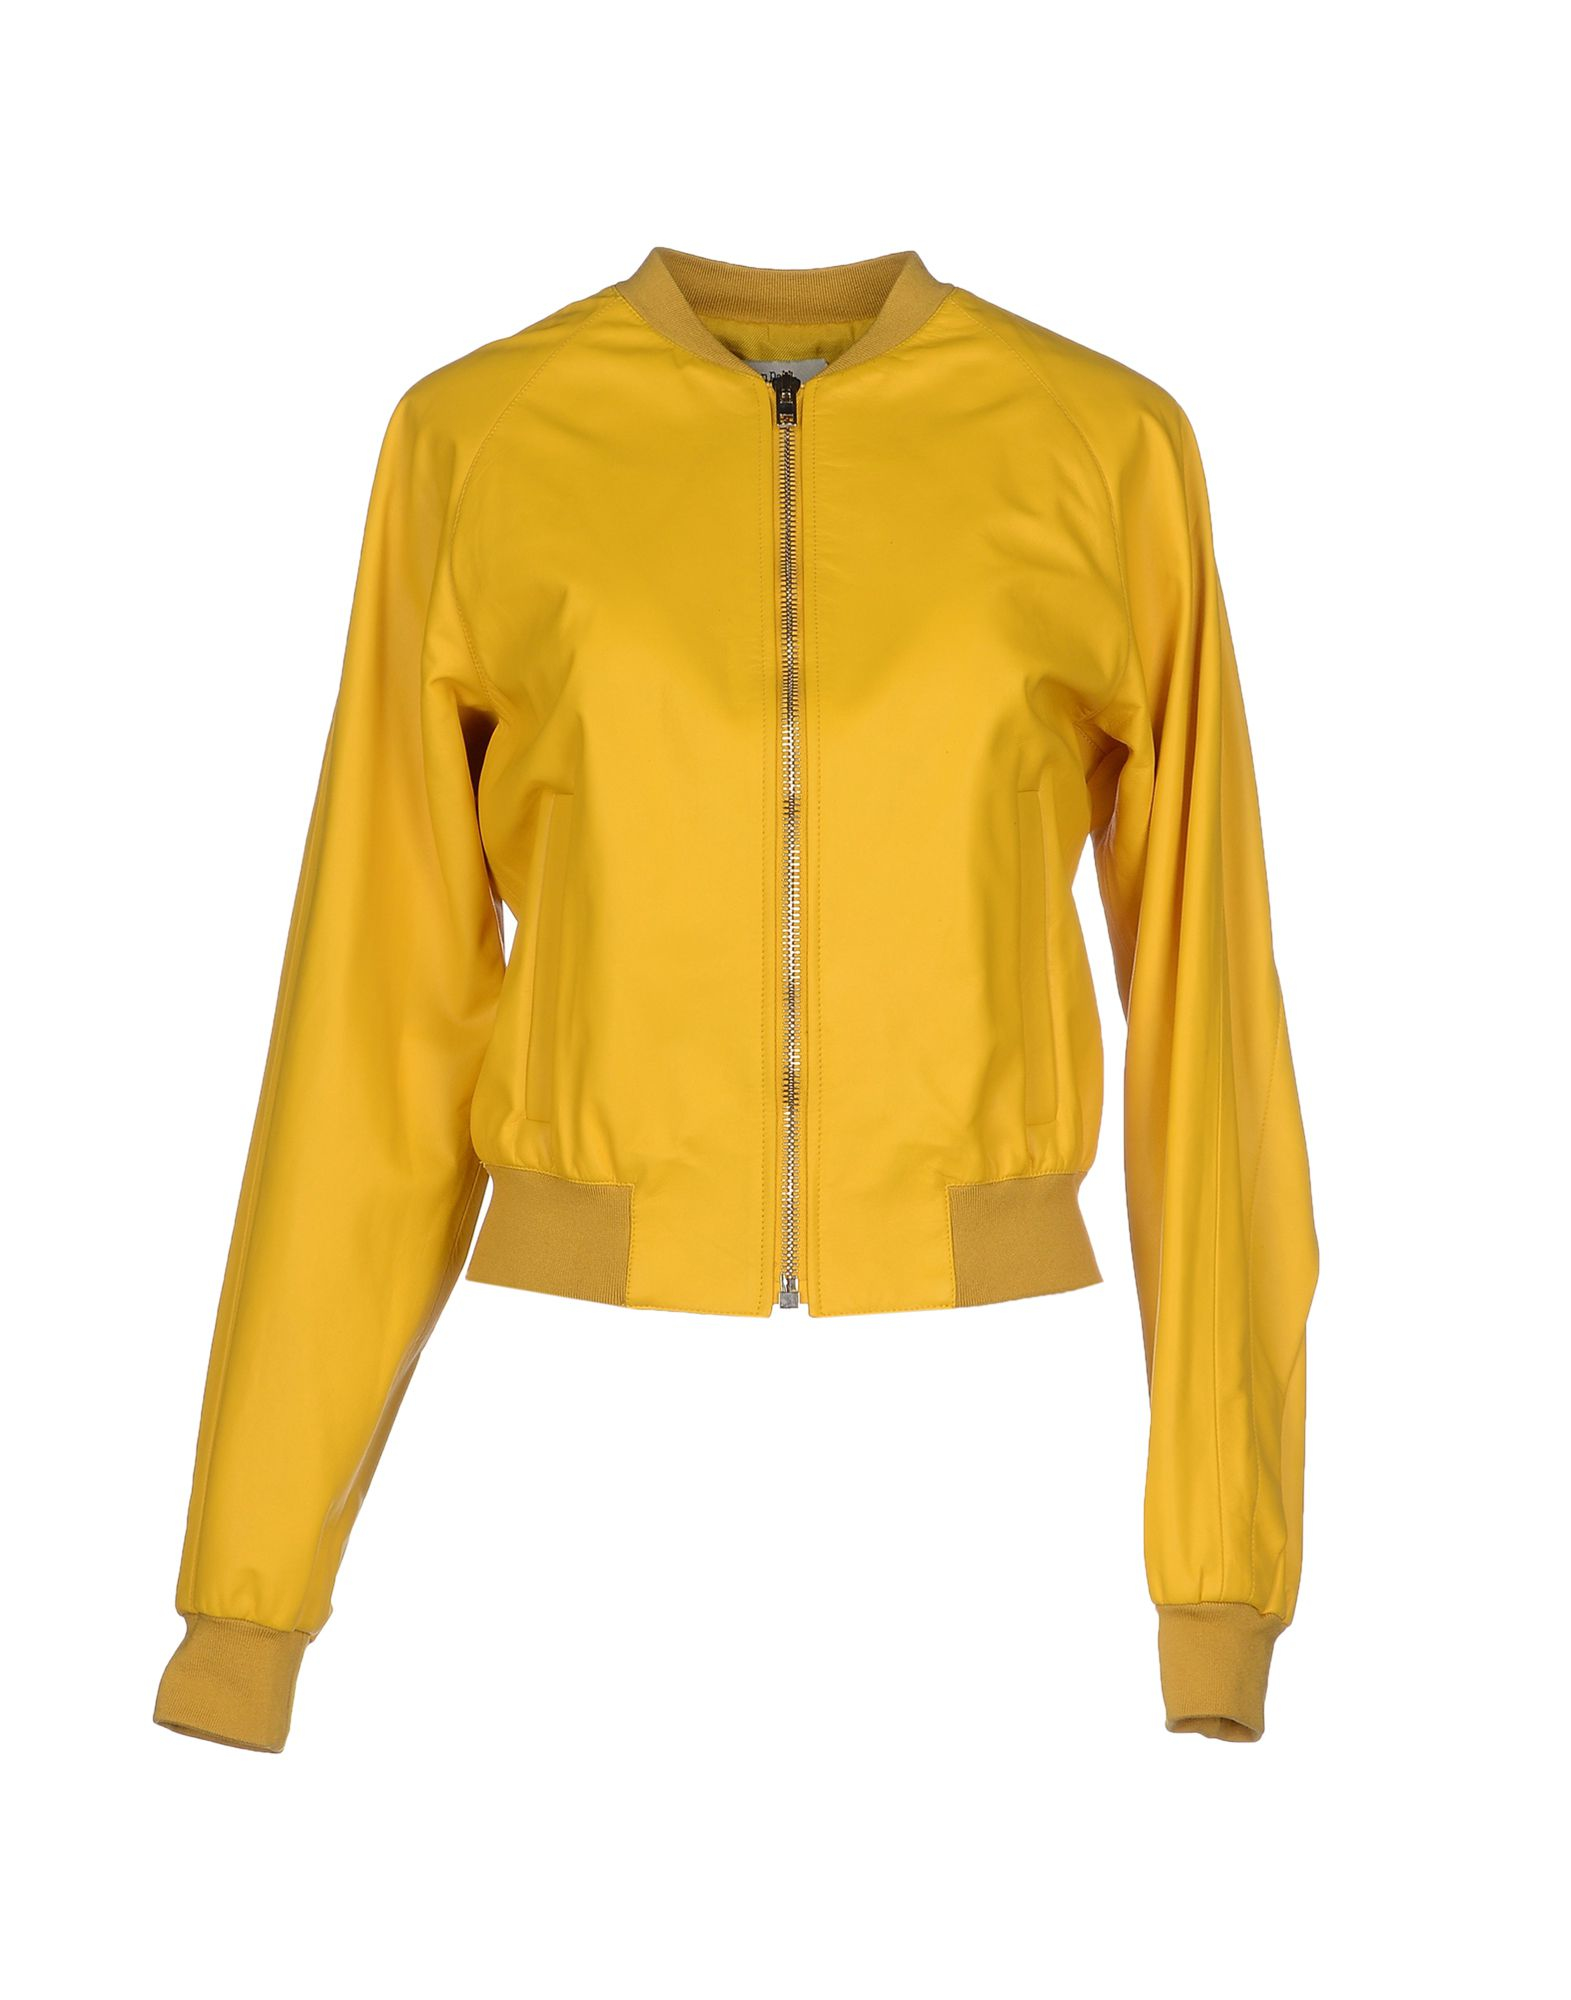 Jean paul gaultier Jacket in Yellow | Lyst